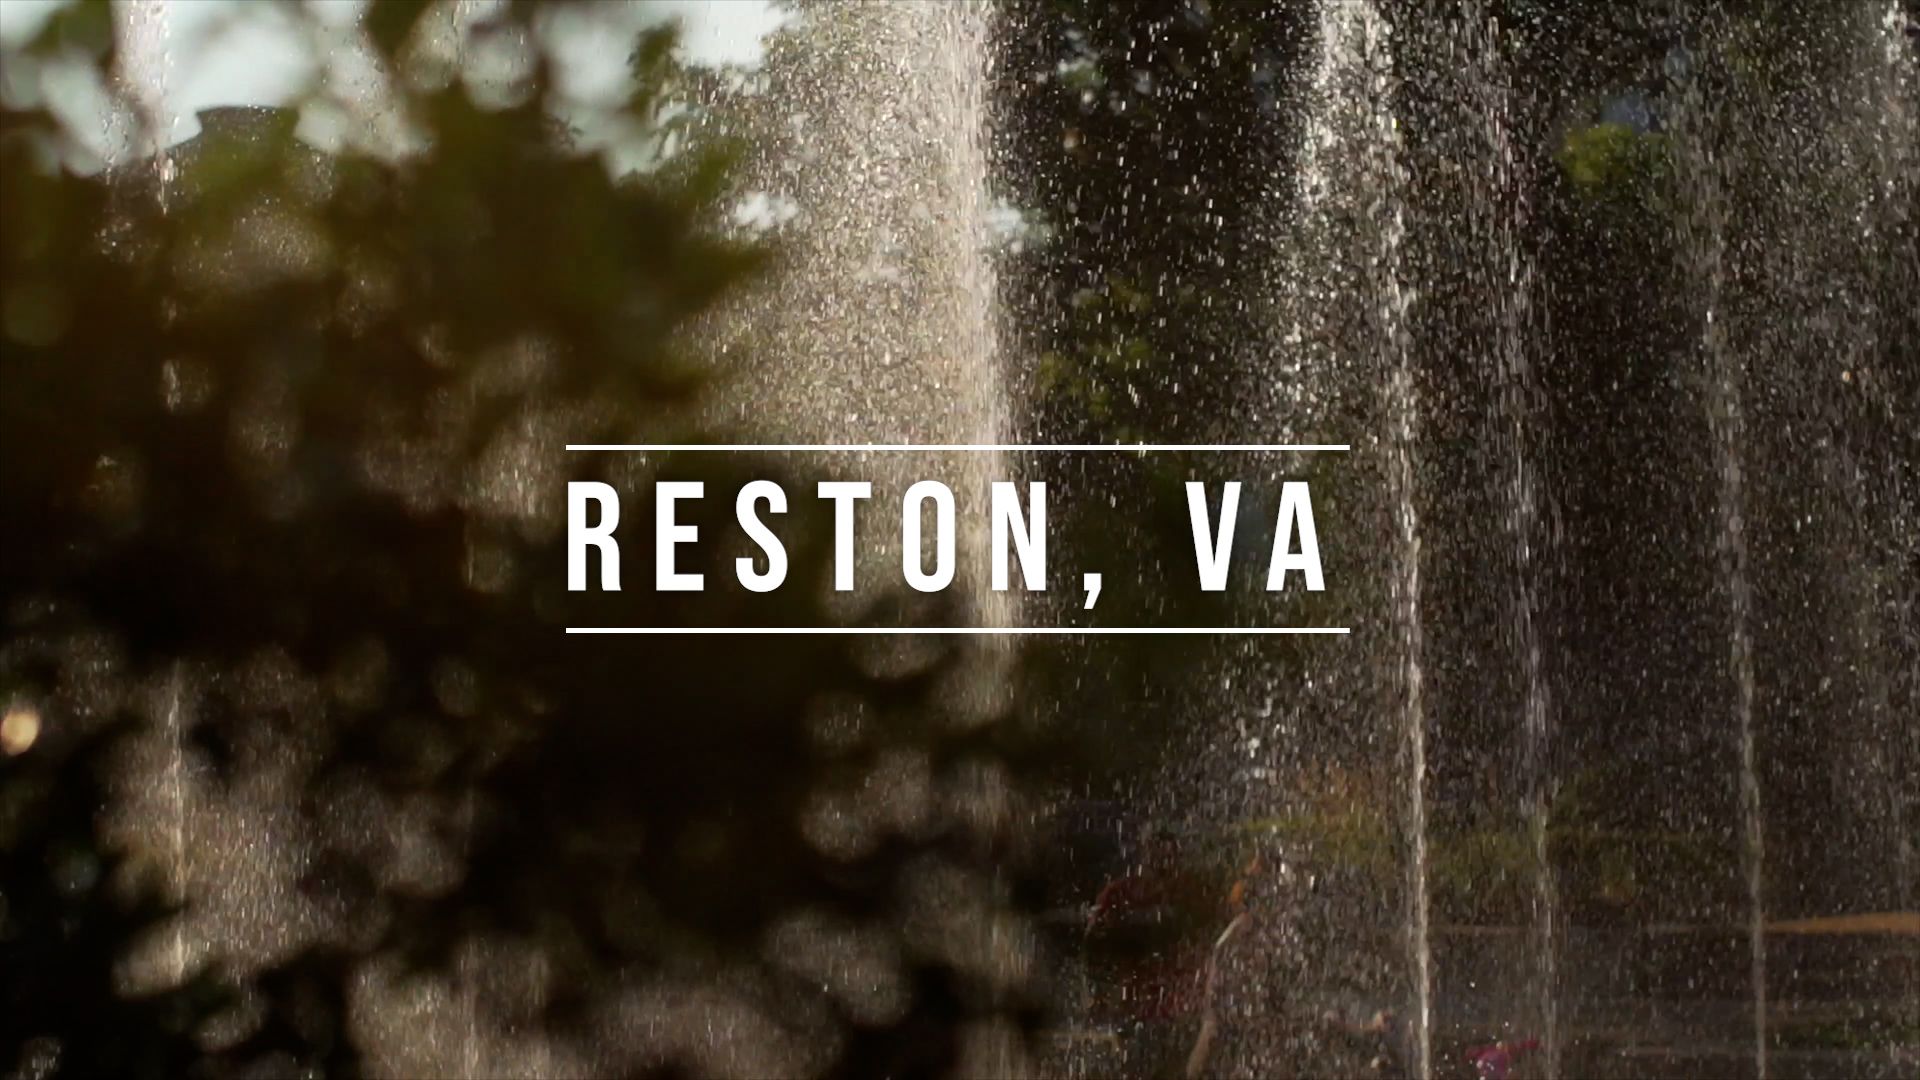 Reston, VA